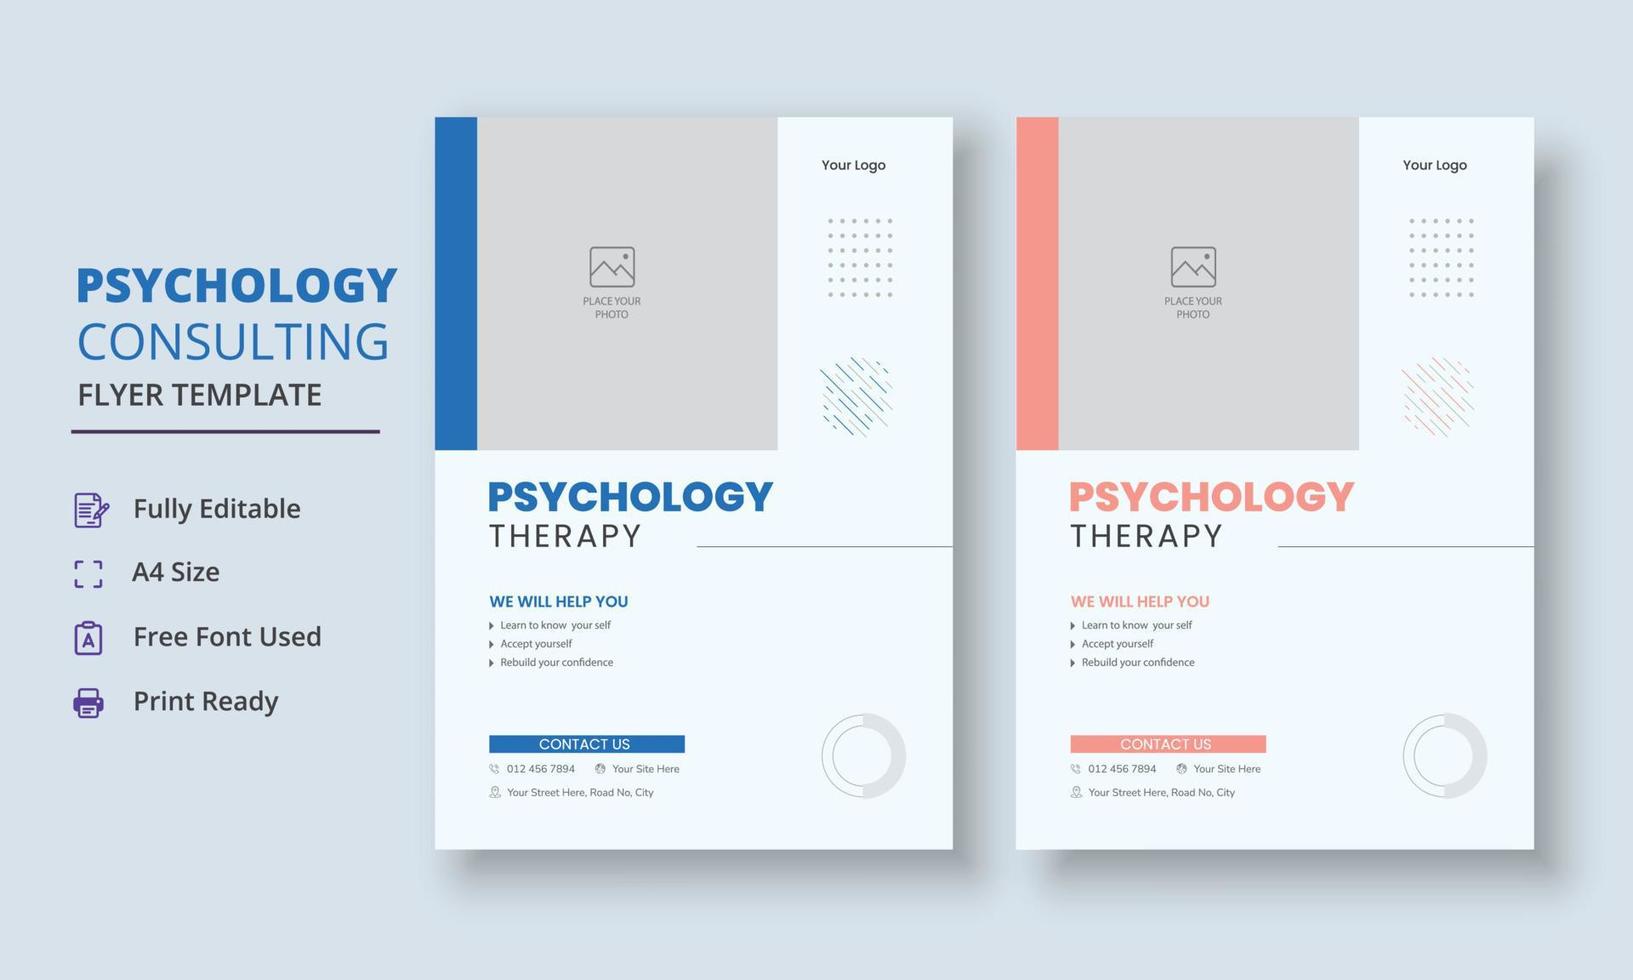 psychologie begeleiding folder, psychologie behandeling folder, mentaal Gezondheid bewustzijn folder sjabloon vector